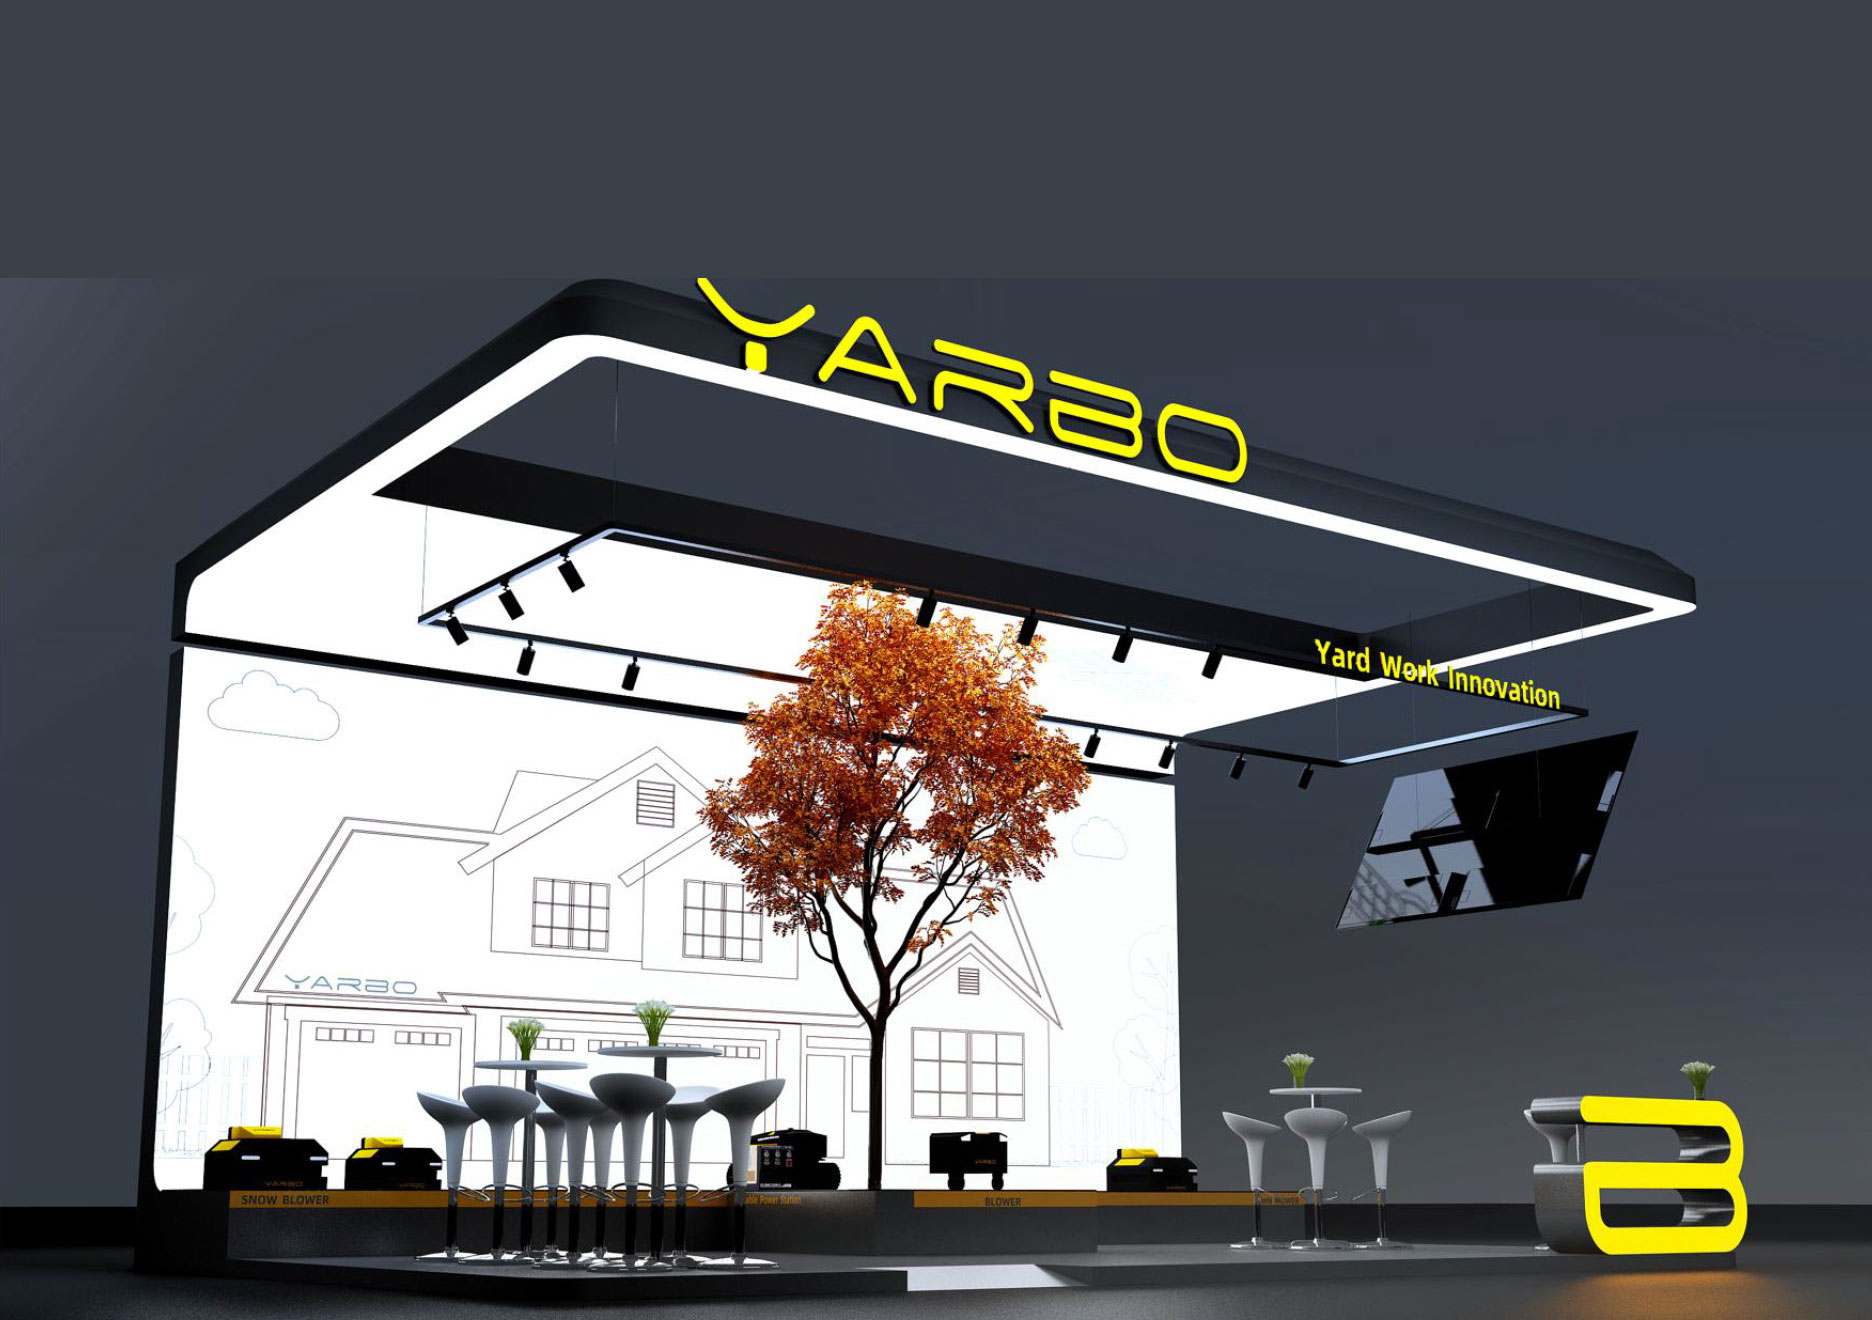 美國國際消費類電子產品博覽會 CES YARBO